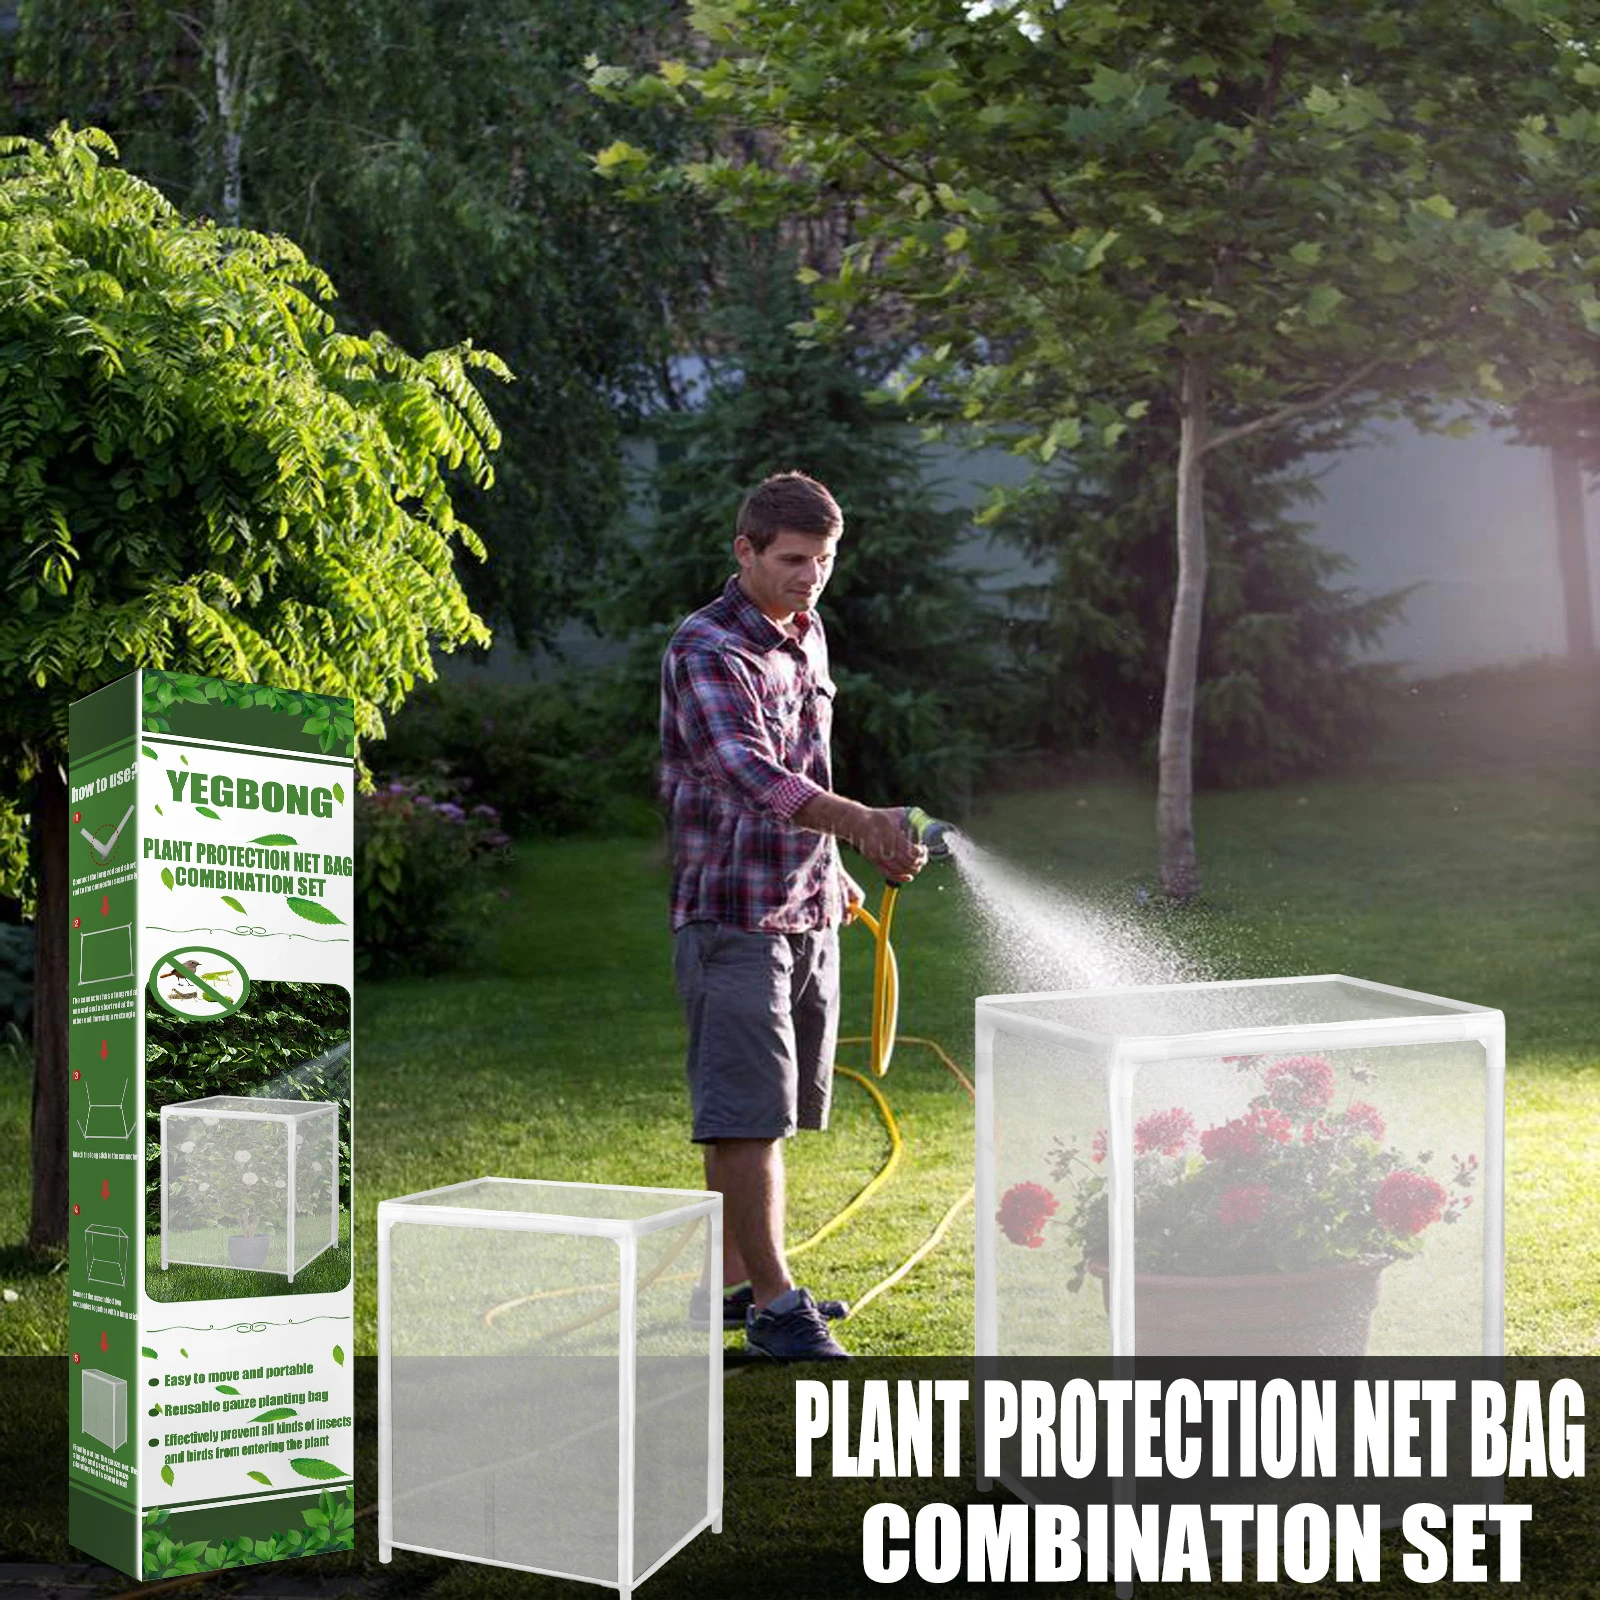 

Сетка для защиты от насекомых, садовая защитная сетка для овощей и растений, 20 дюймов, для защиты от птиц, цветов, теплиц